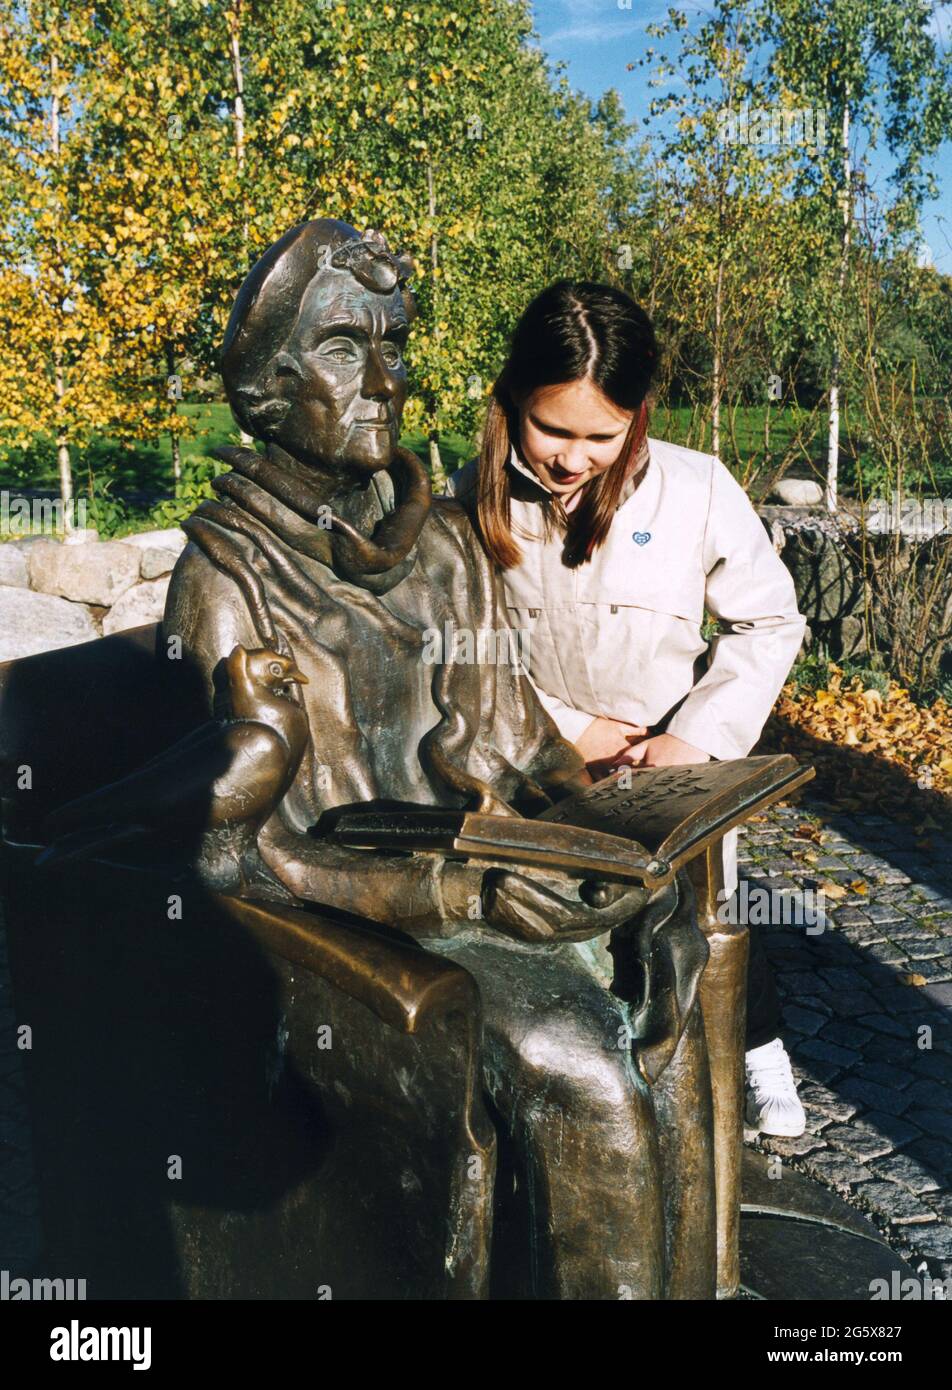 ASTRAD LINDGREN Statue vor den Junibacken der Erkundungs- und Spielplatz für Kinder.Junges Mädchen lehnt sich über die Armlehne und liest im Buch Stockfoto